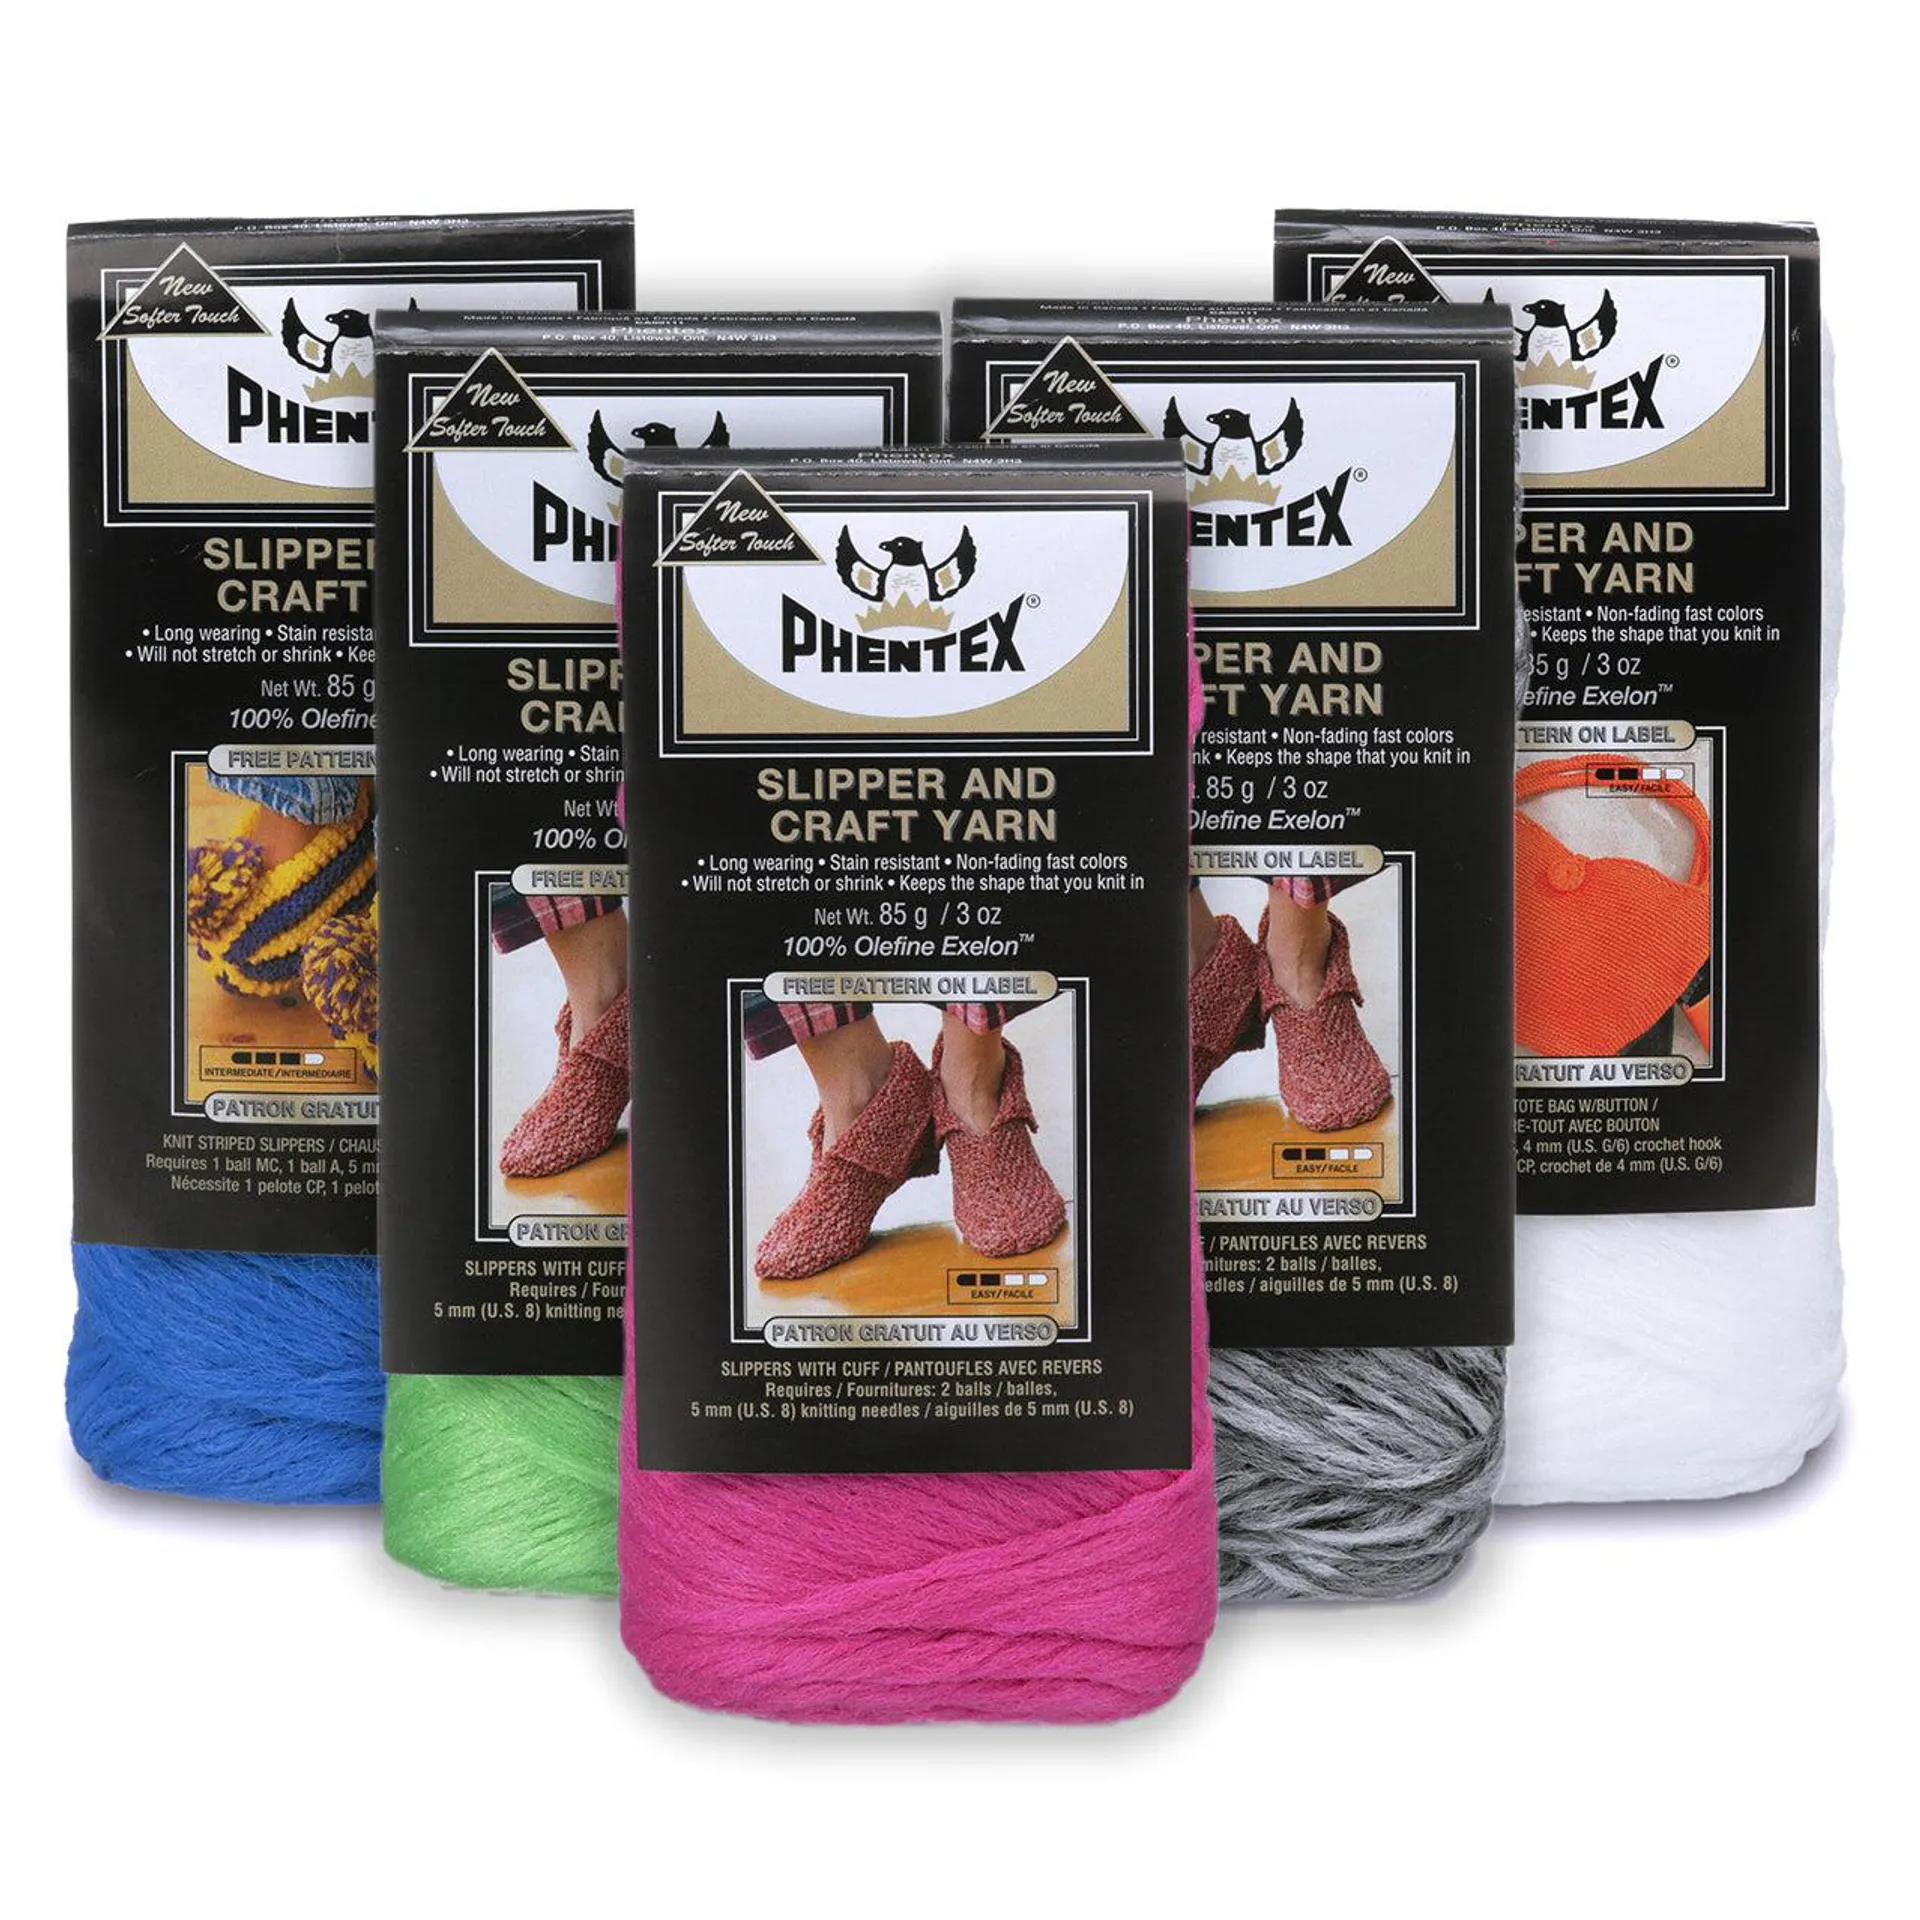 Slipper and Craft yarn - 85g - Phentex